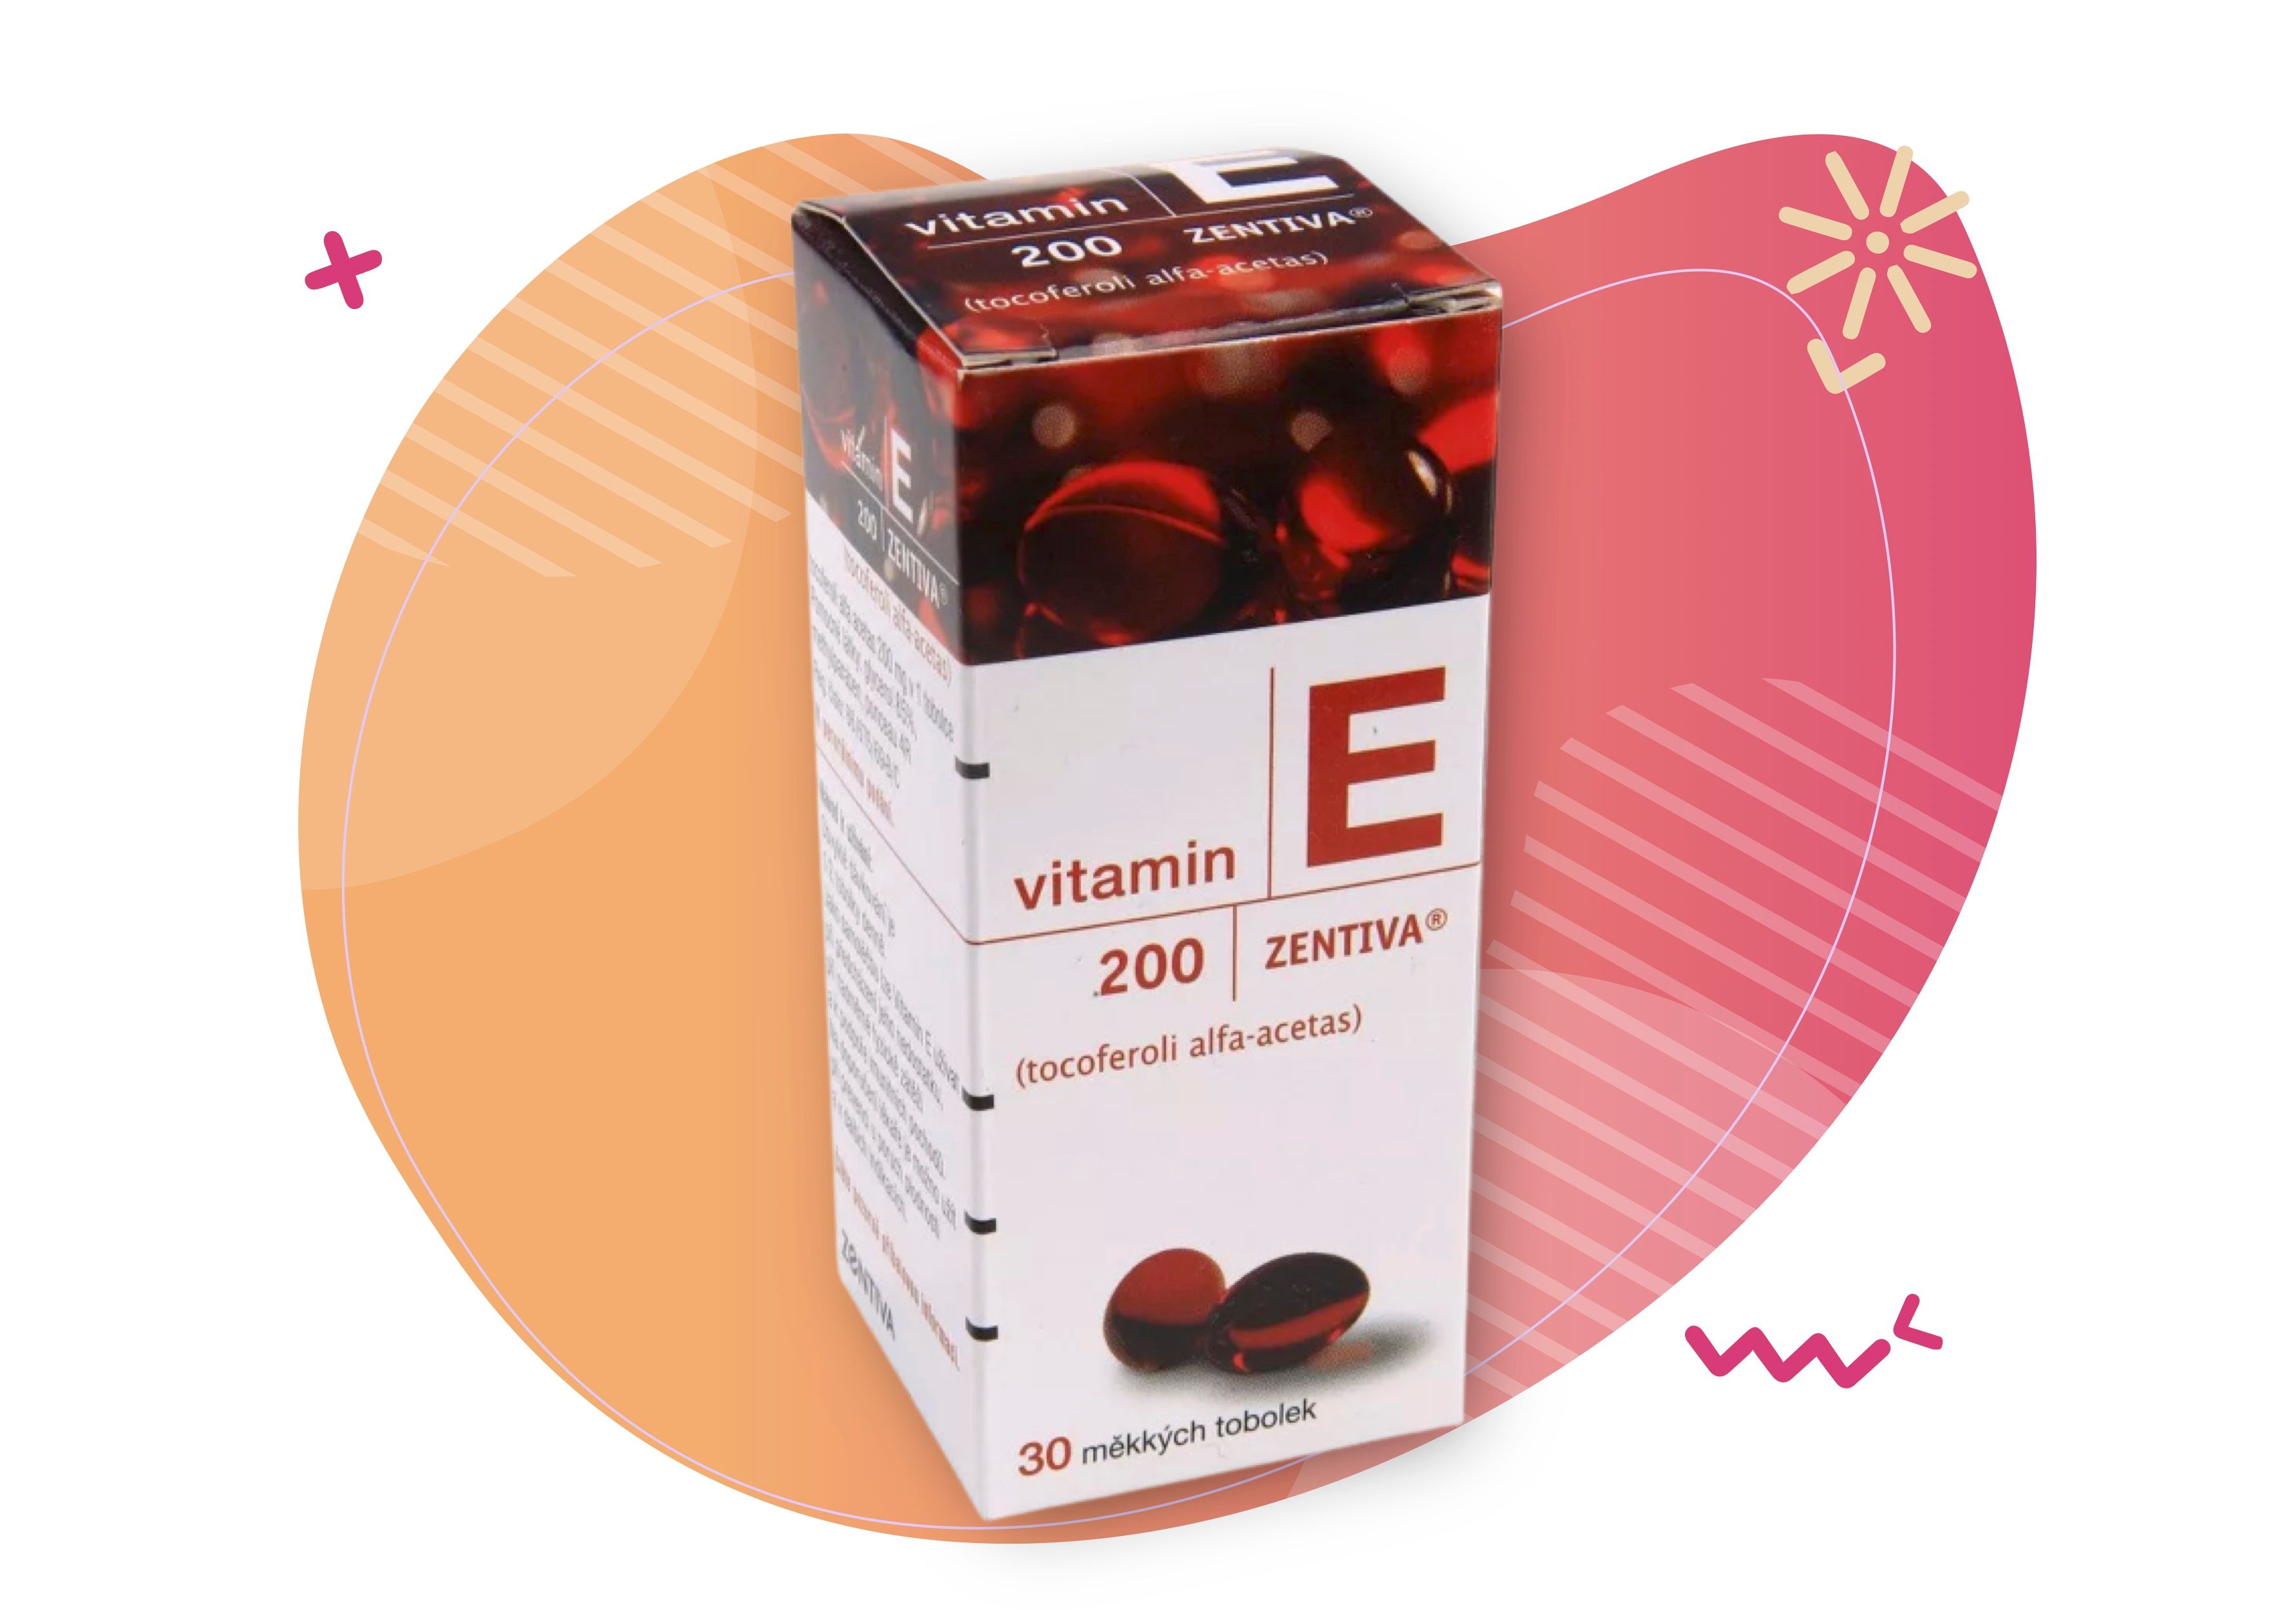 Zentiva Vitamin E 200 30 měkkých tobolek